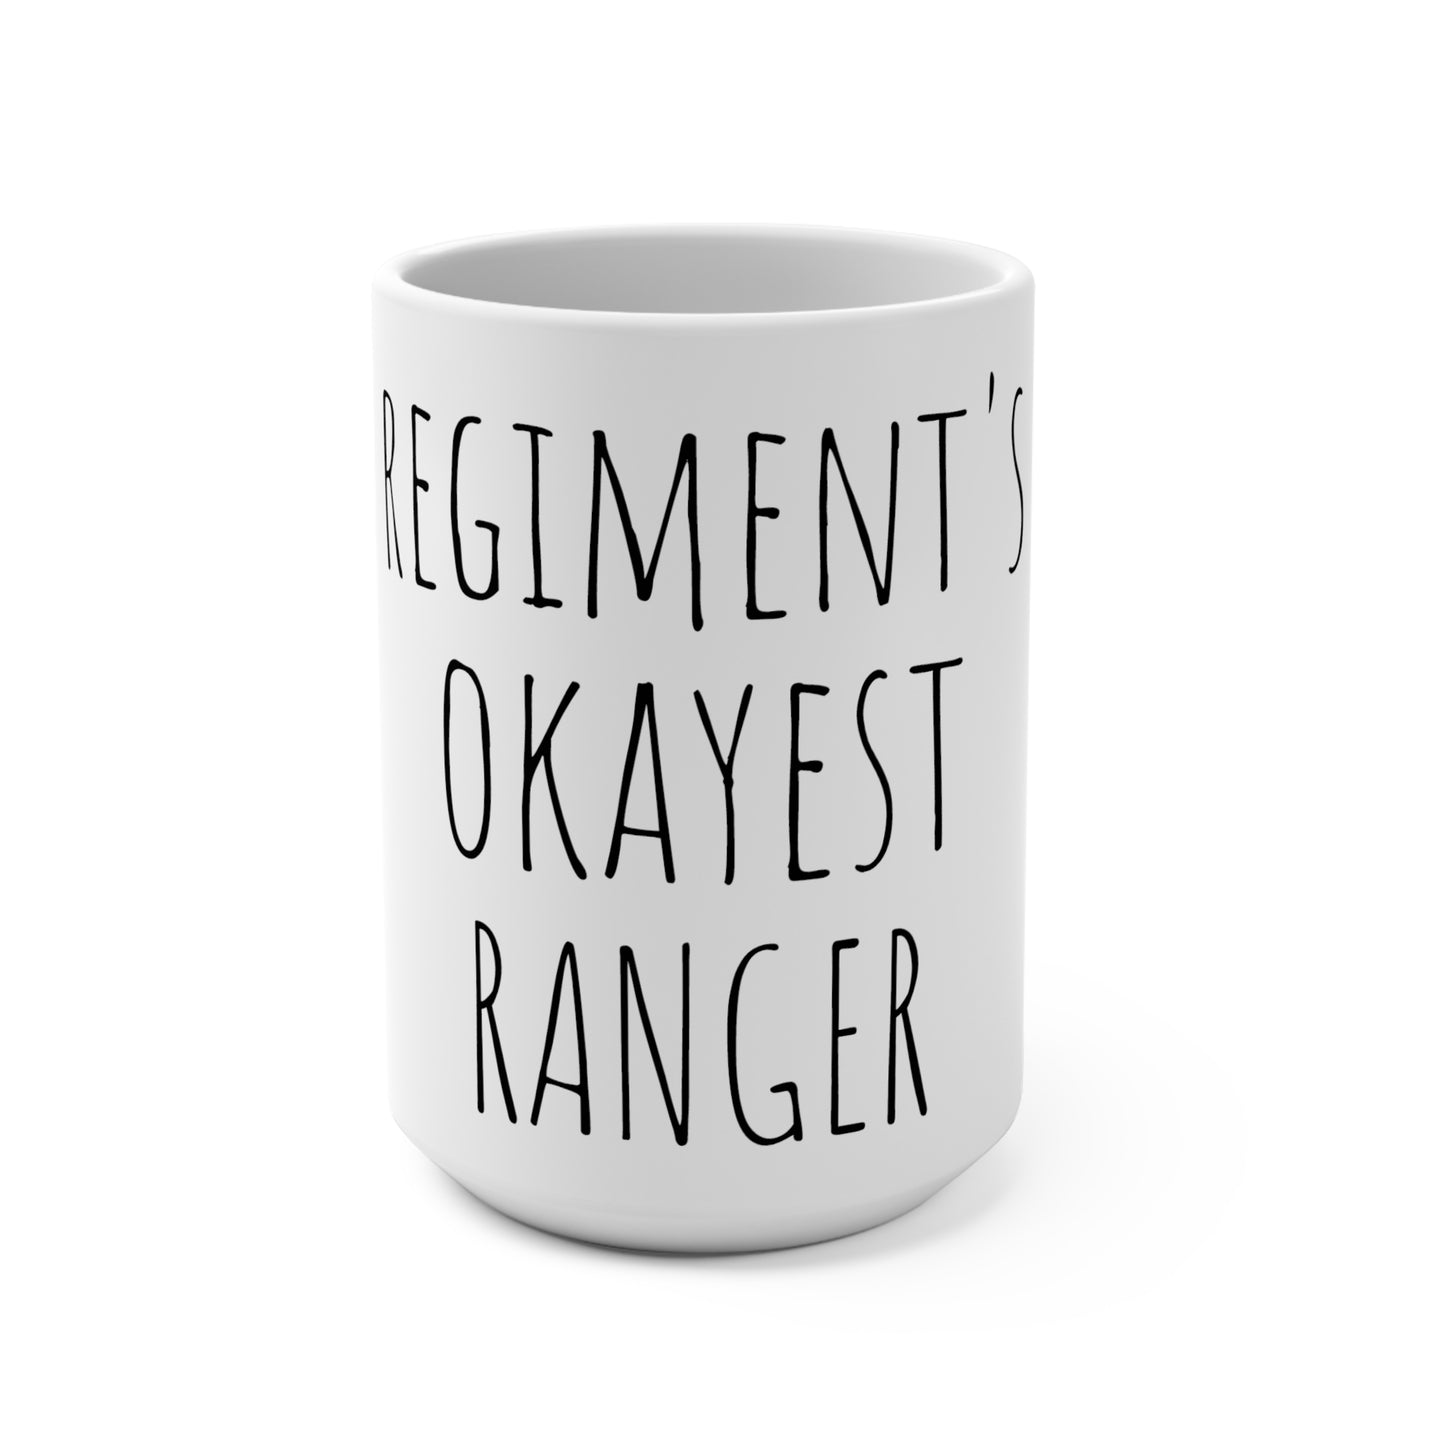 Regiment's Okayest Ranger 15oz Mug